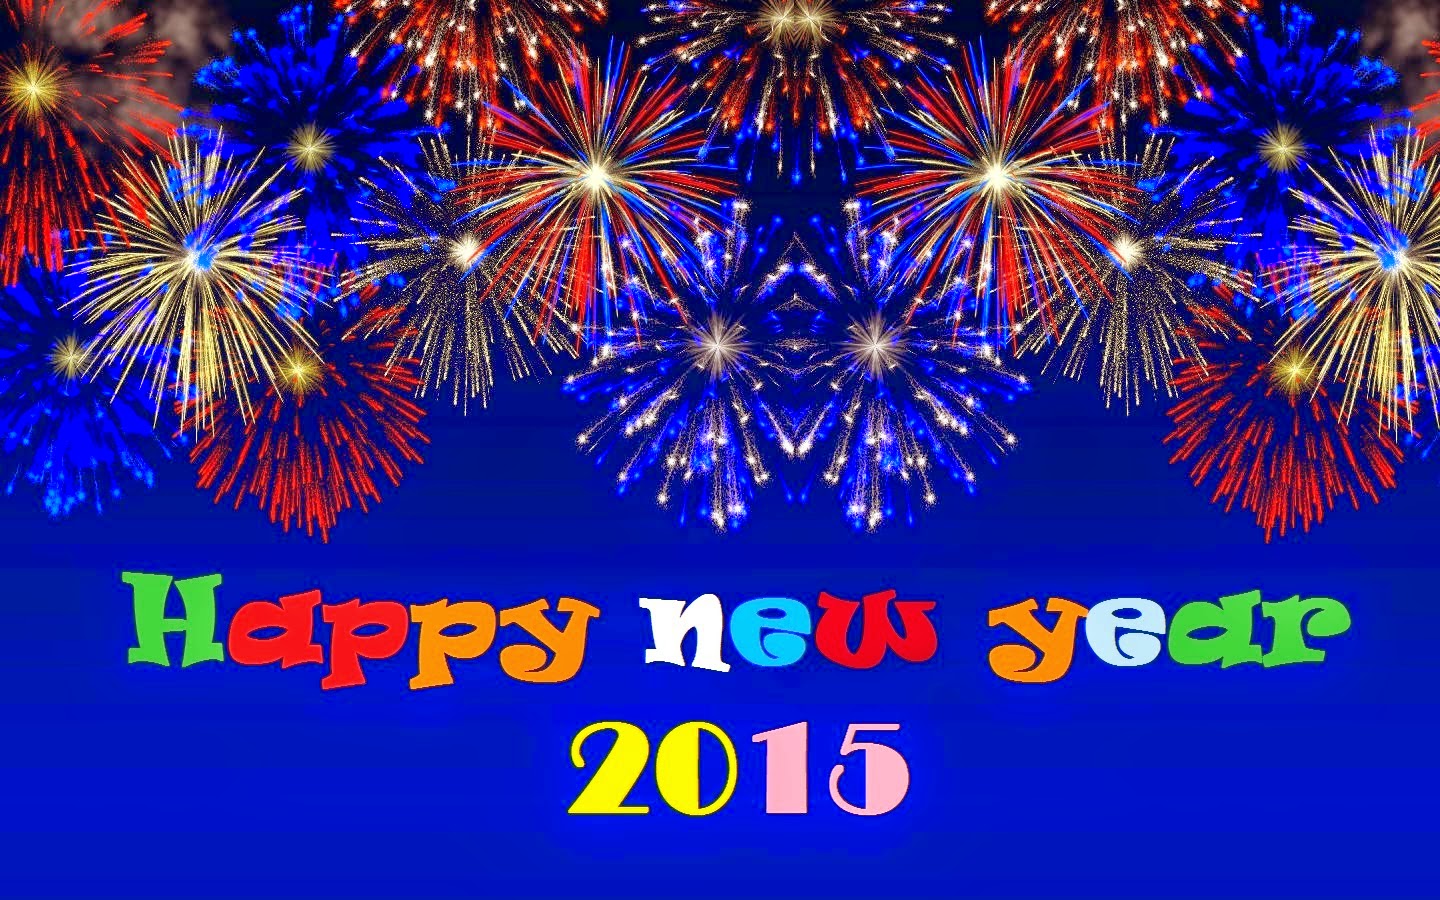 Gambar Ucapan Selamat Tahun Baru 2015